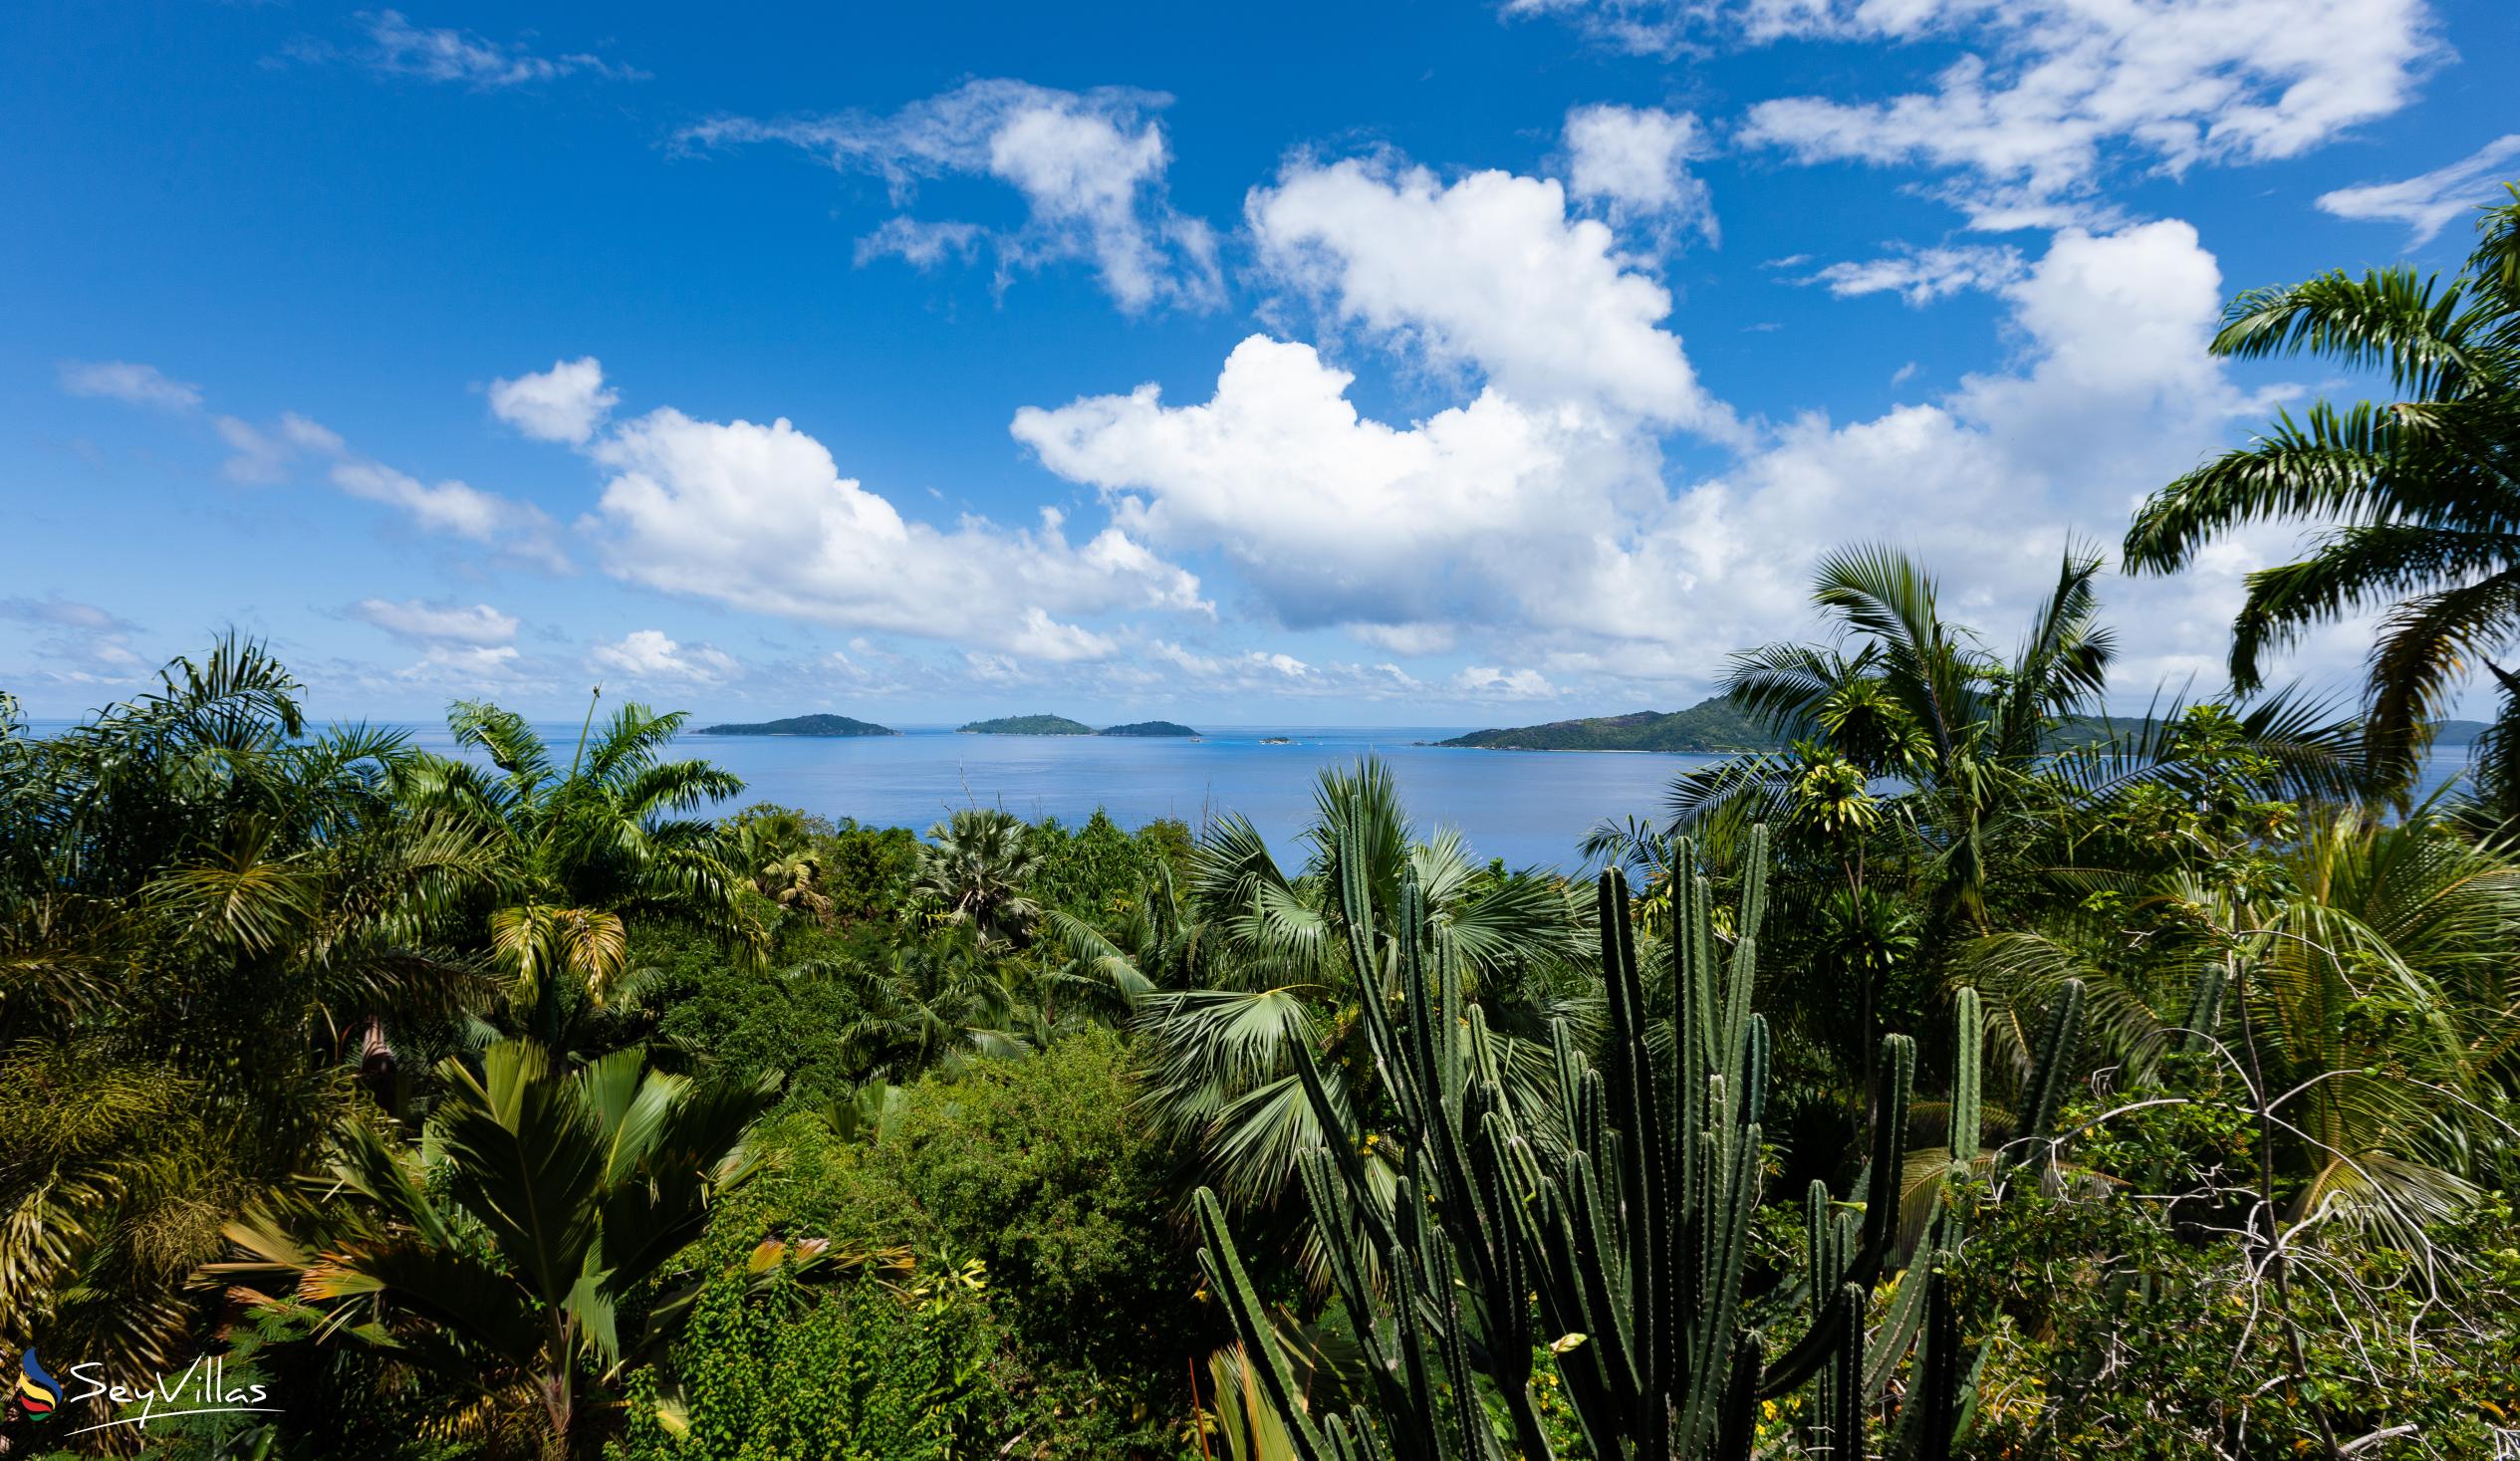 Foto 16: Secret Villa - Posizione - La Digue (Seychelles)